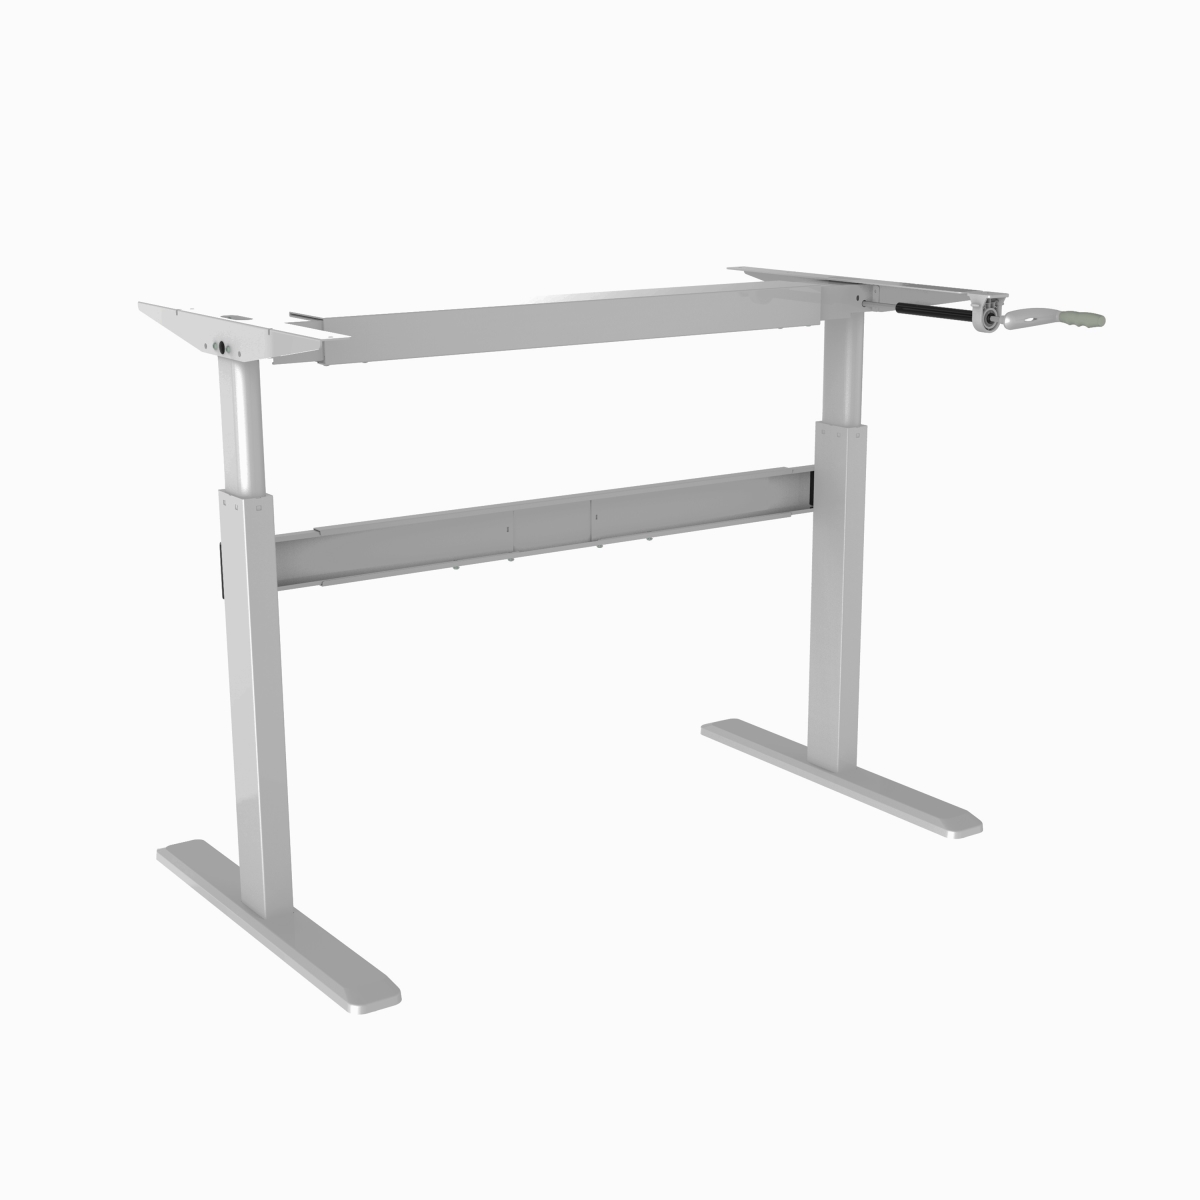 Tyds14012 29.5 In. Cranked Sit-stand Desk Frame